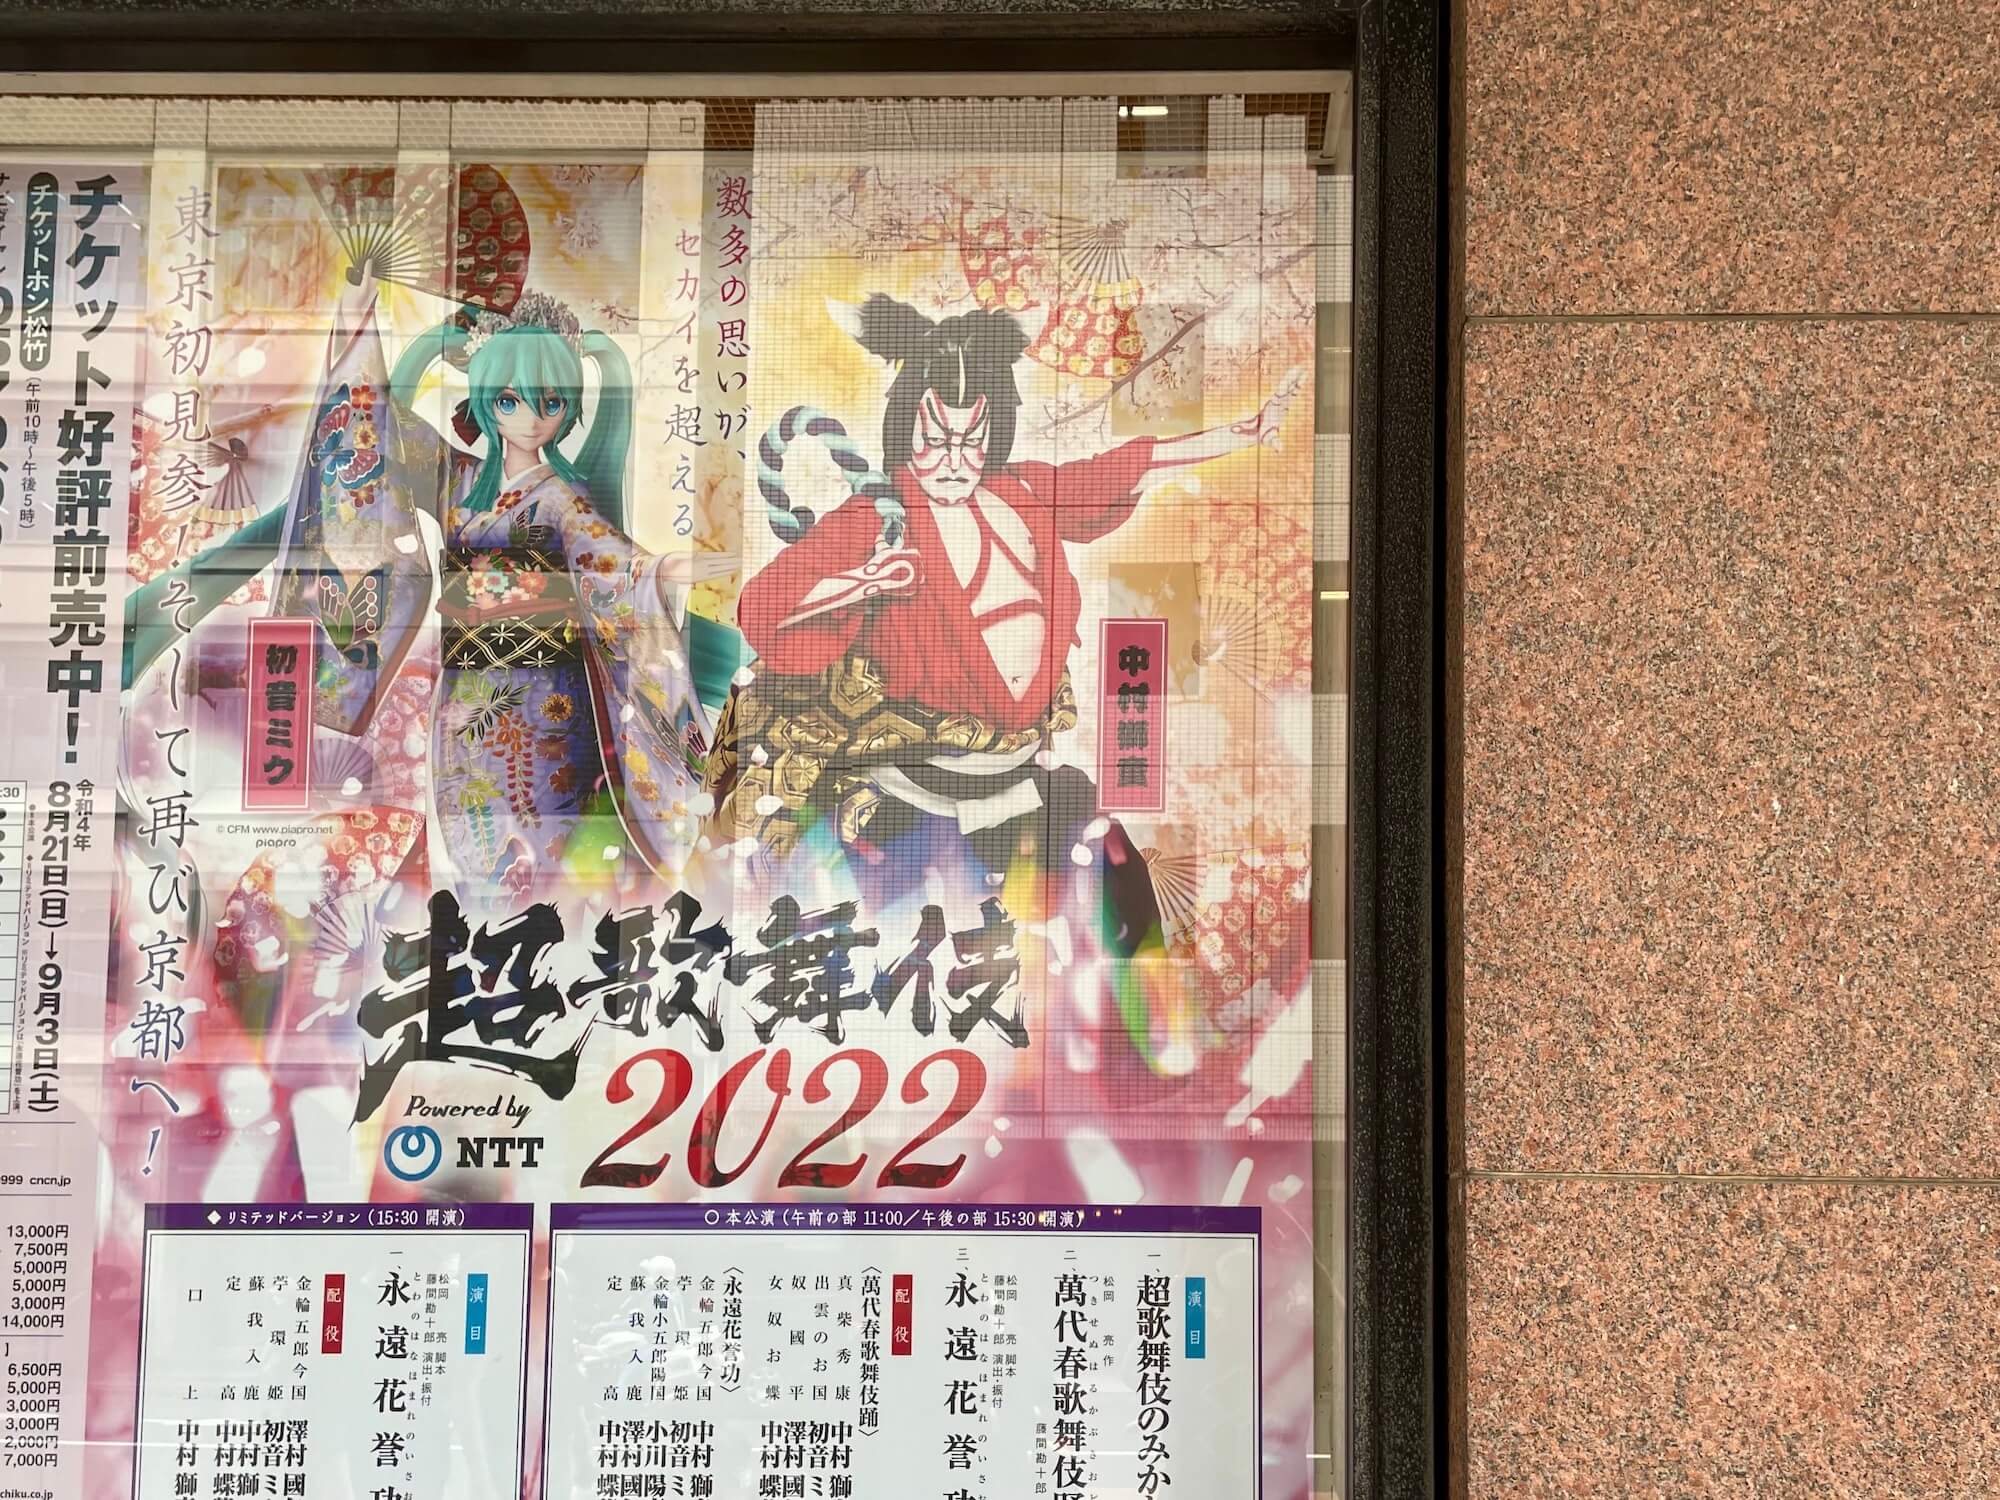 【観劇レポート】超歌舞伎2022の伝統と革新に痺れっぱなしで抜け出せない